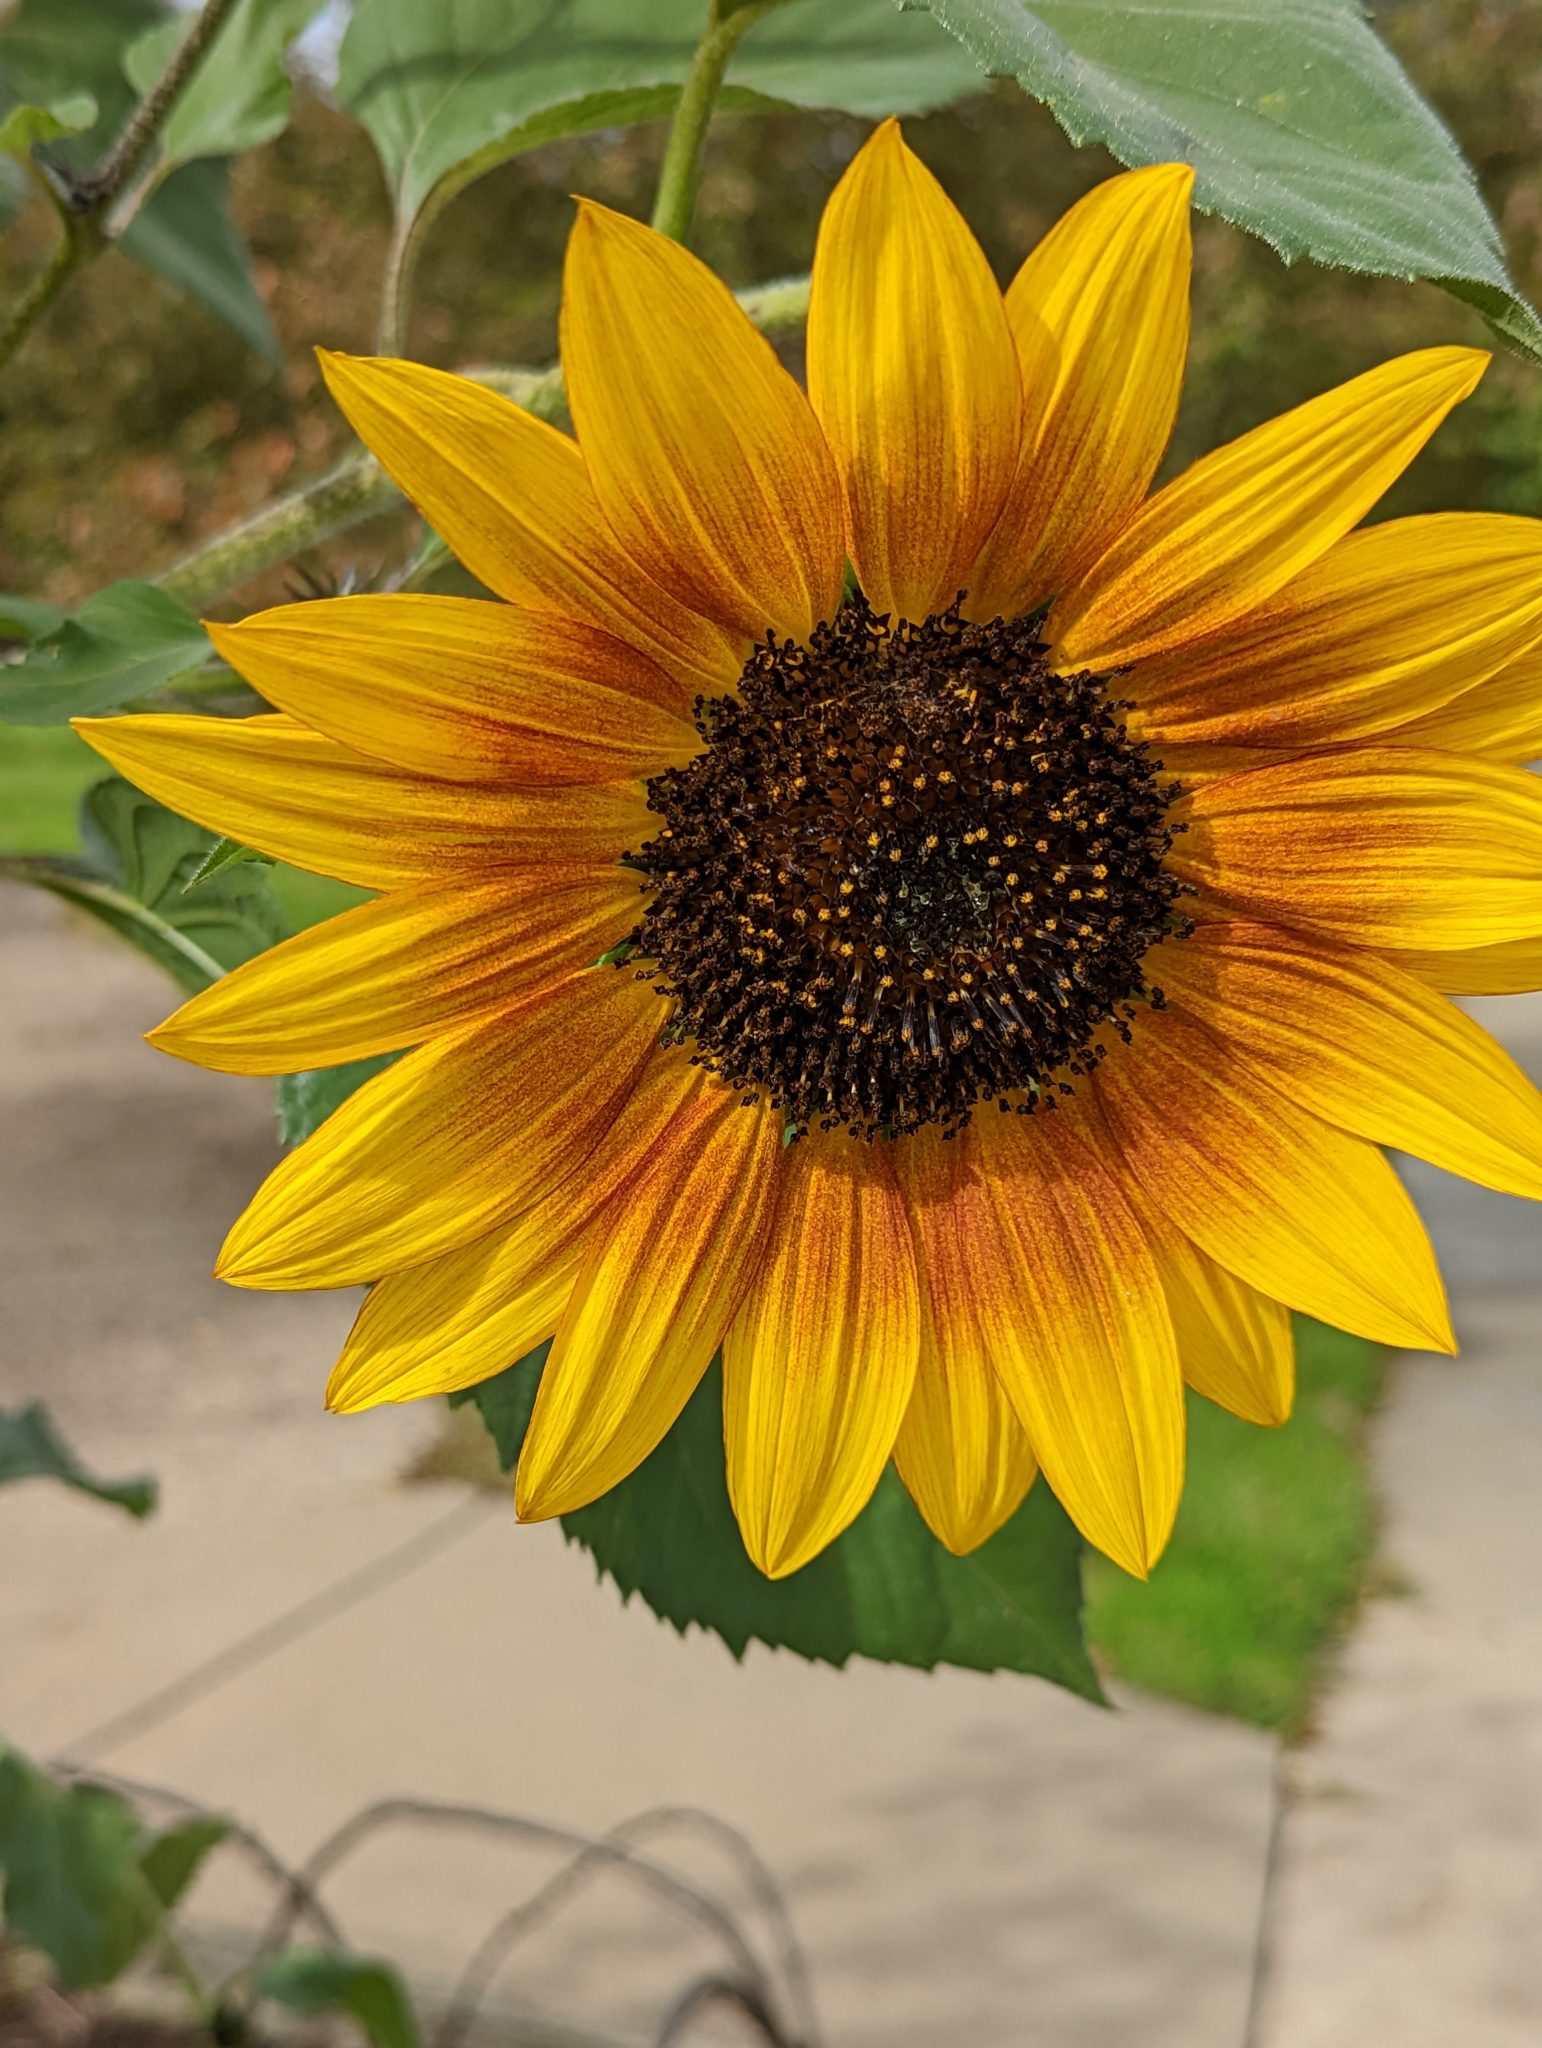 A big sunflower